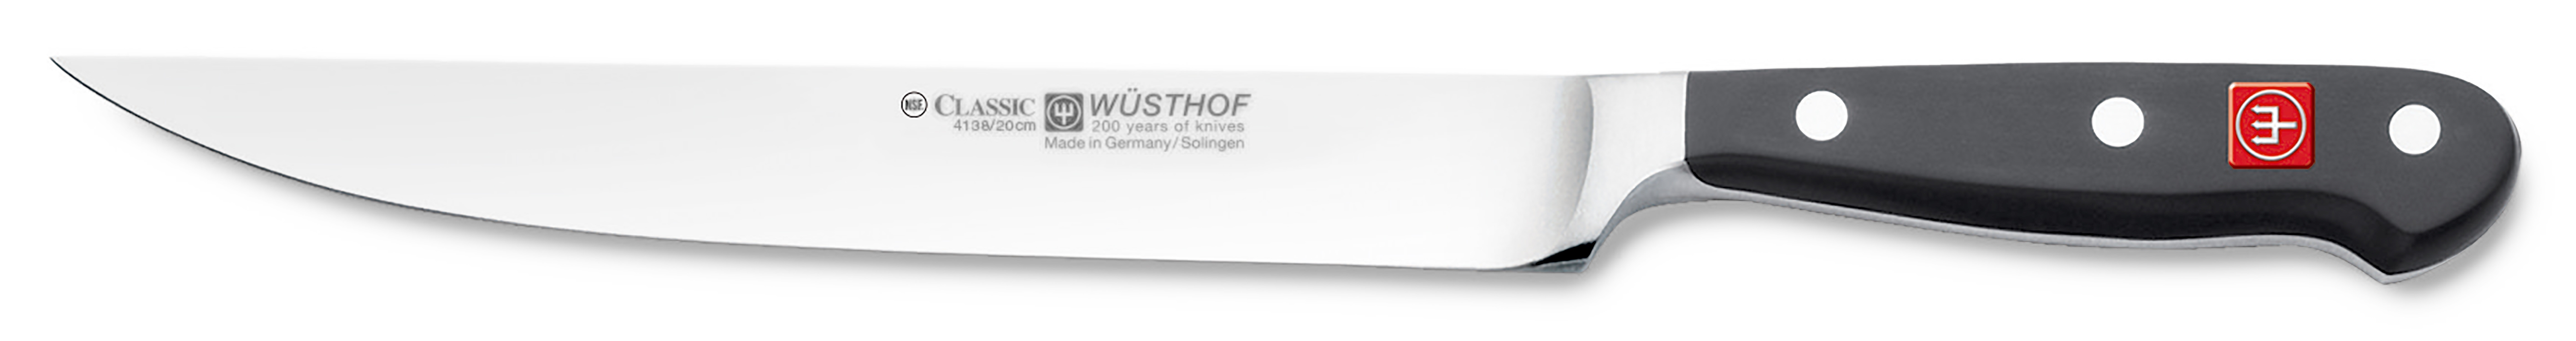 Wüsthof CLASSIC Küchenmesser 20cm